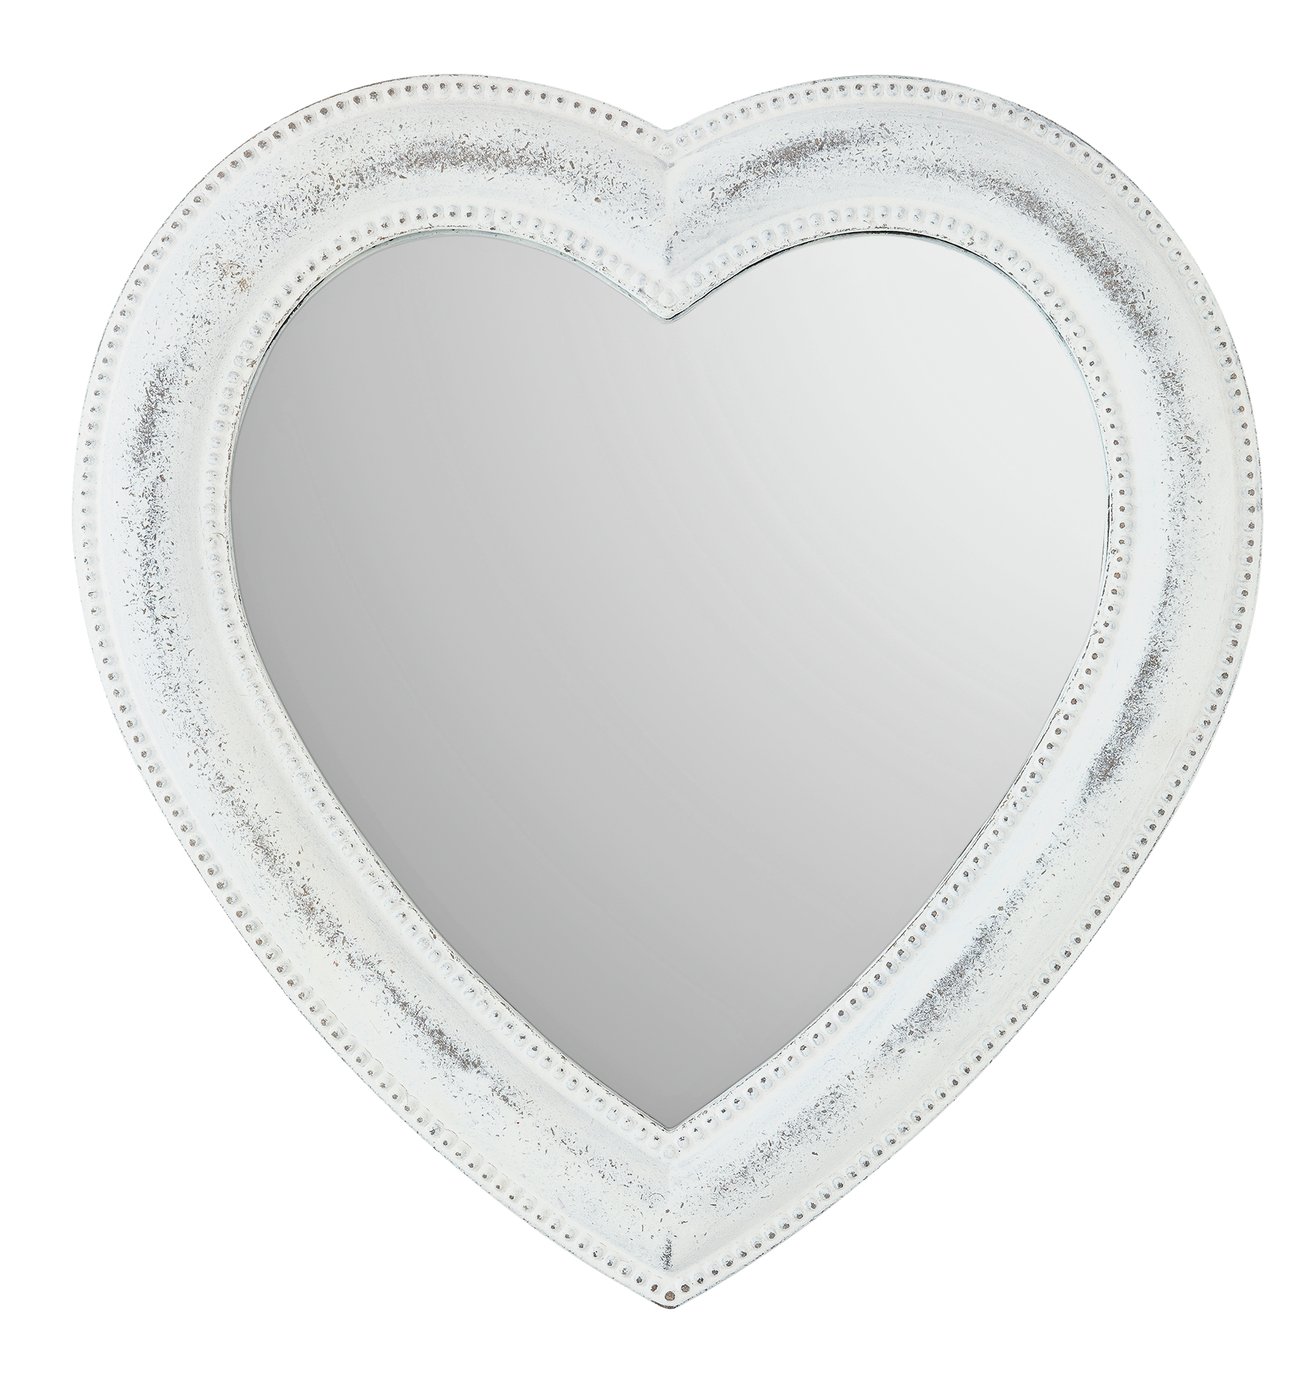 Argos Home Heart Country Mirror - White